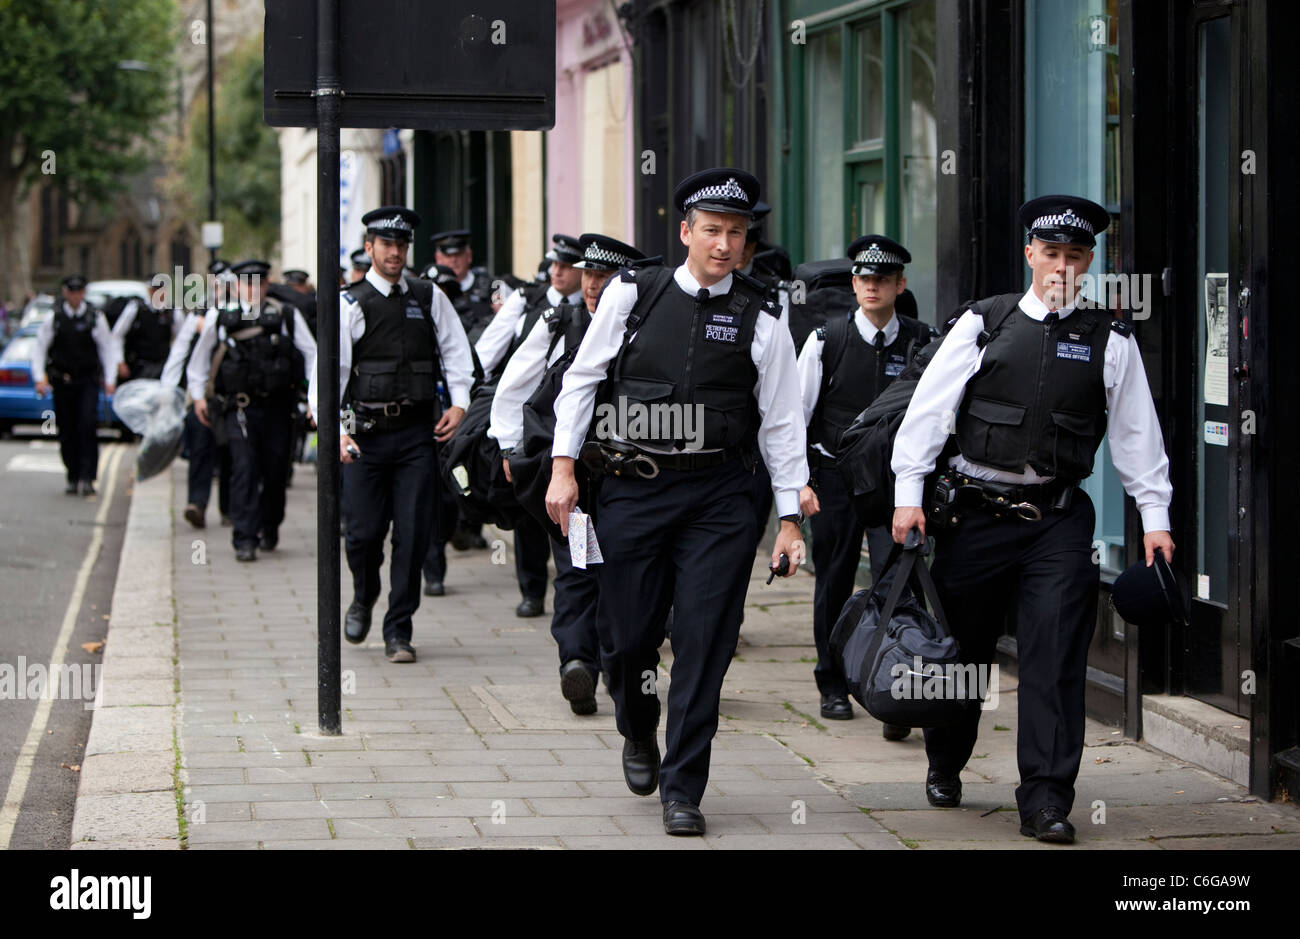 Un groupe d'officiers de police métropolitaine arrivant au Carnaval de Notting Hill, Londres, Angleterre, Royaume-Uni, GB. Banque D'Images